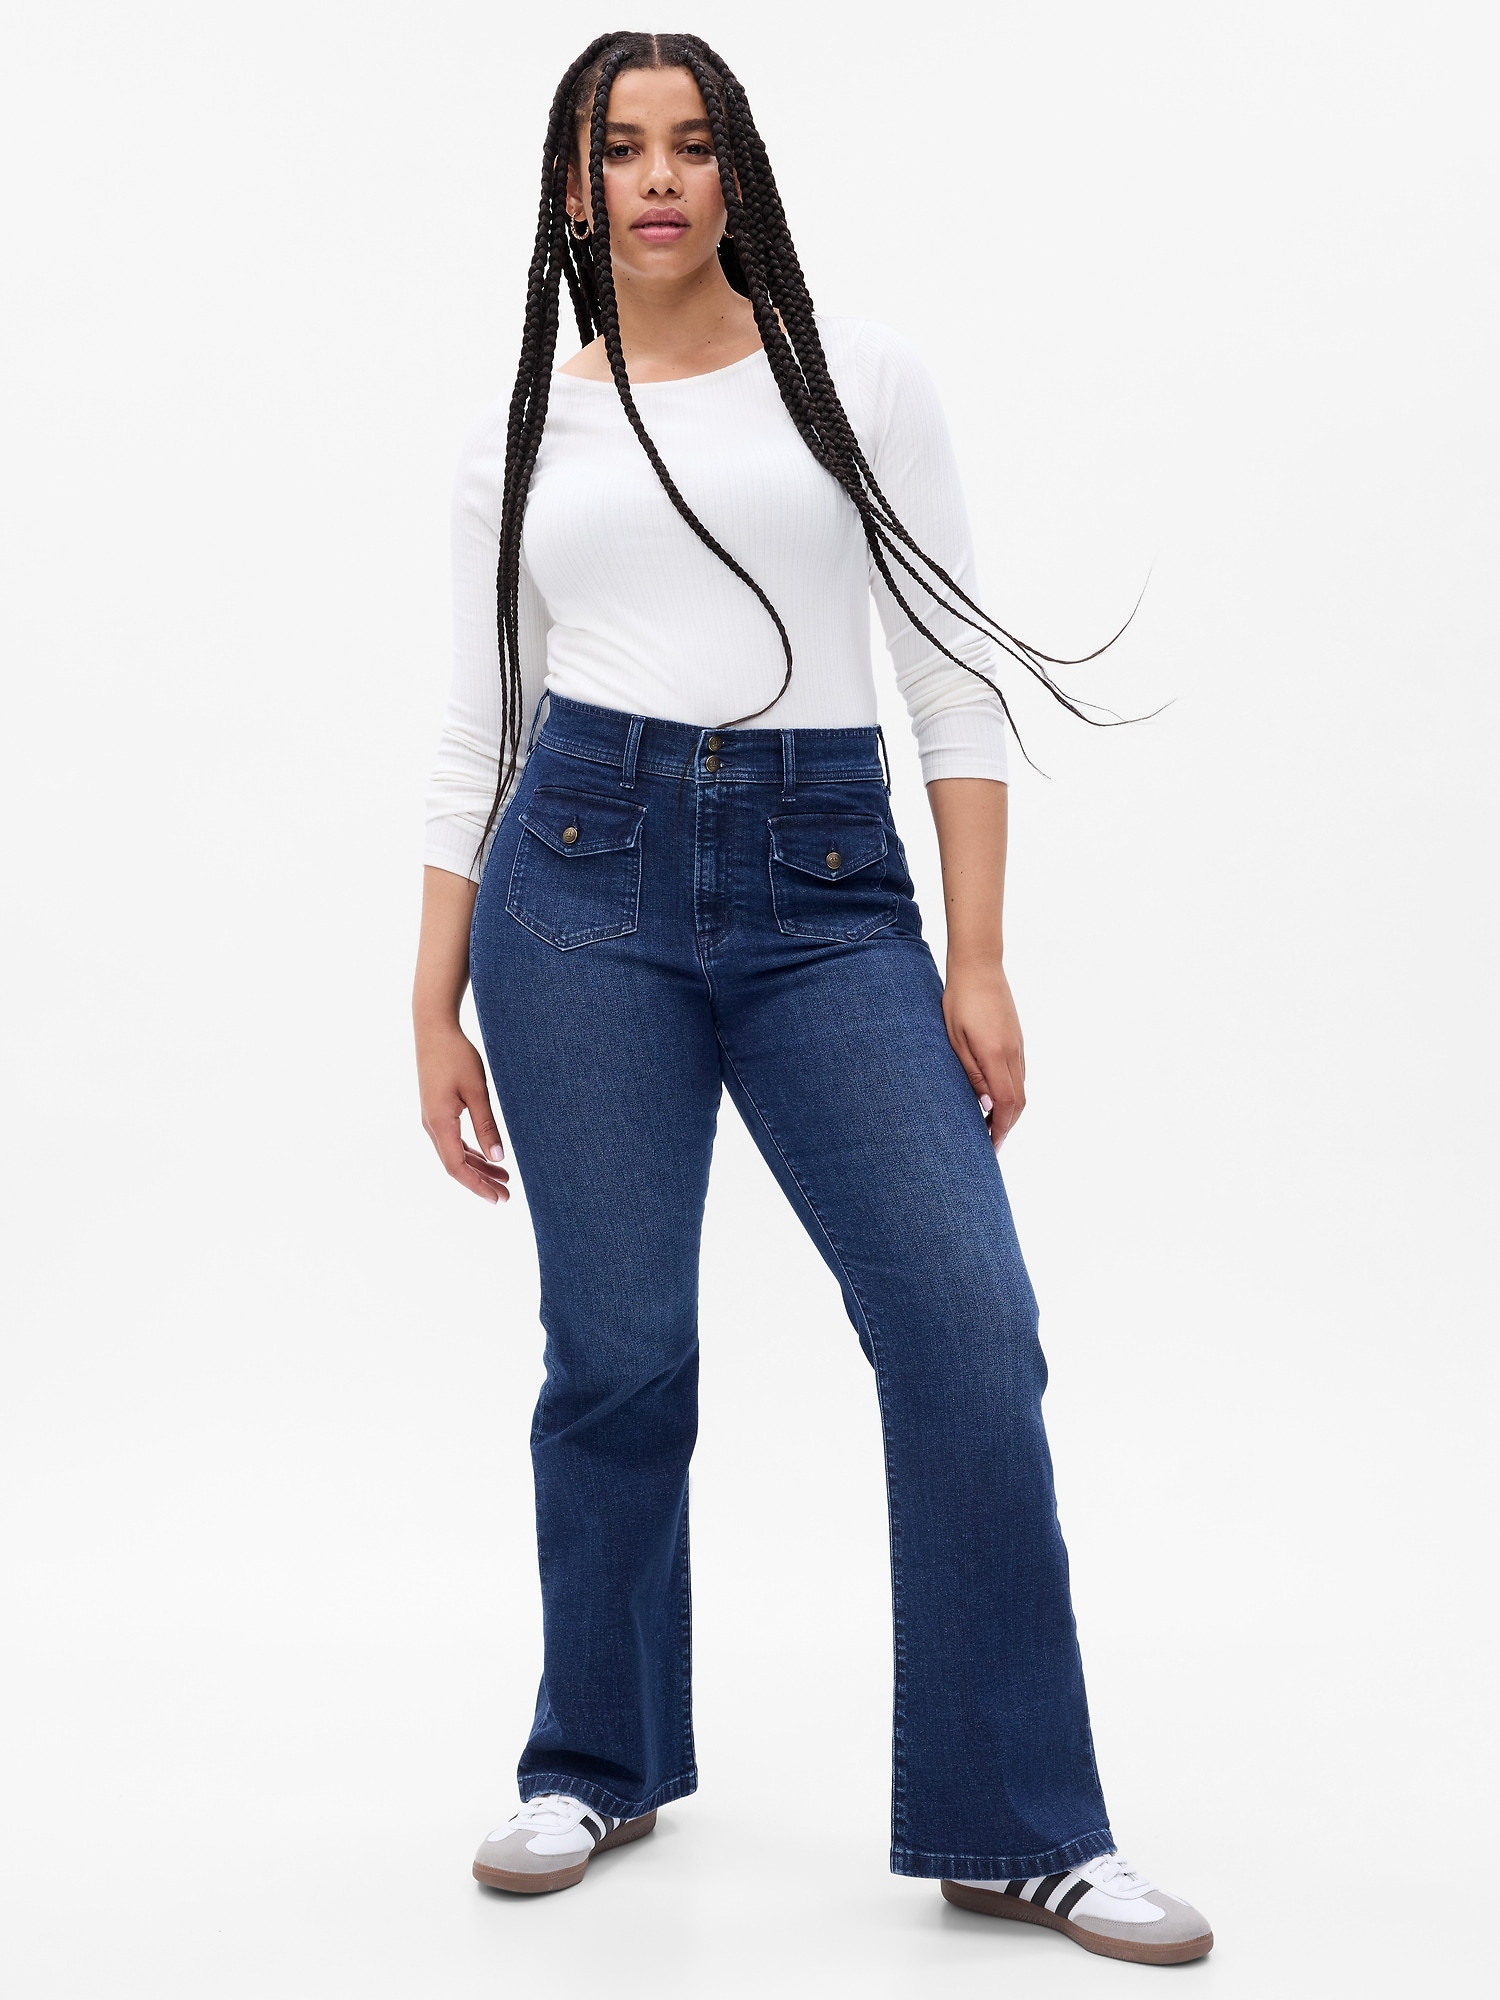 Gap Surplus Flare Denim Beige Jeans Size 2 Mid Rise Flap pockets